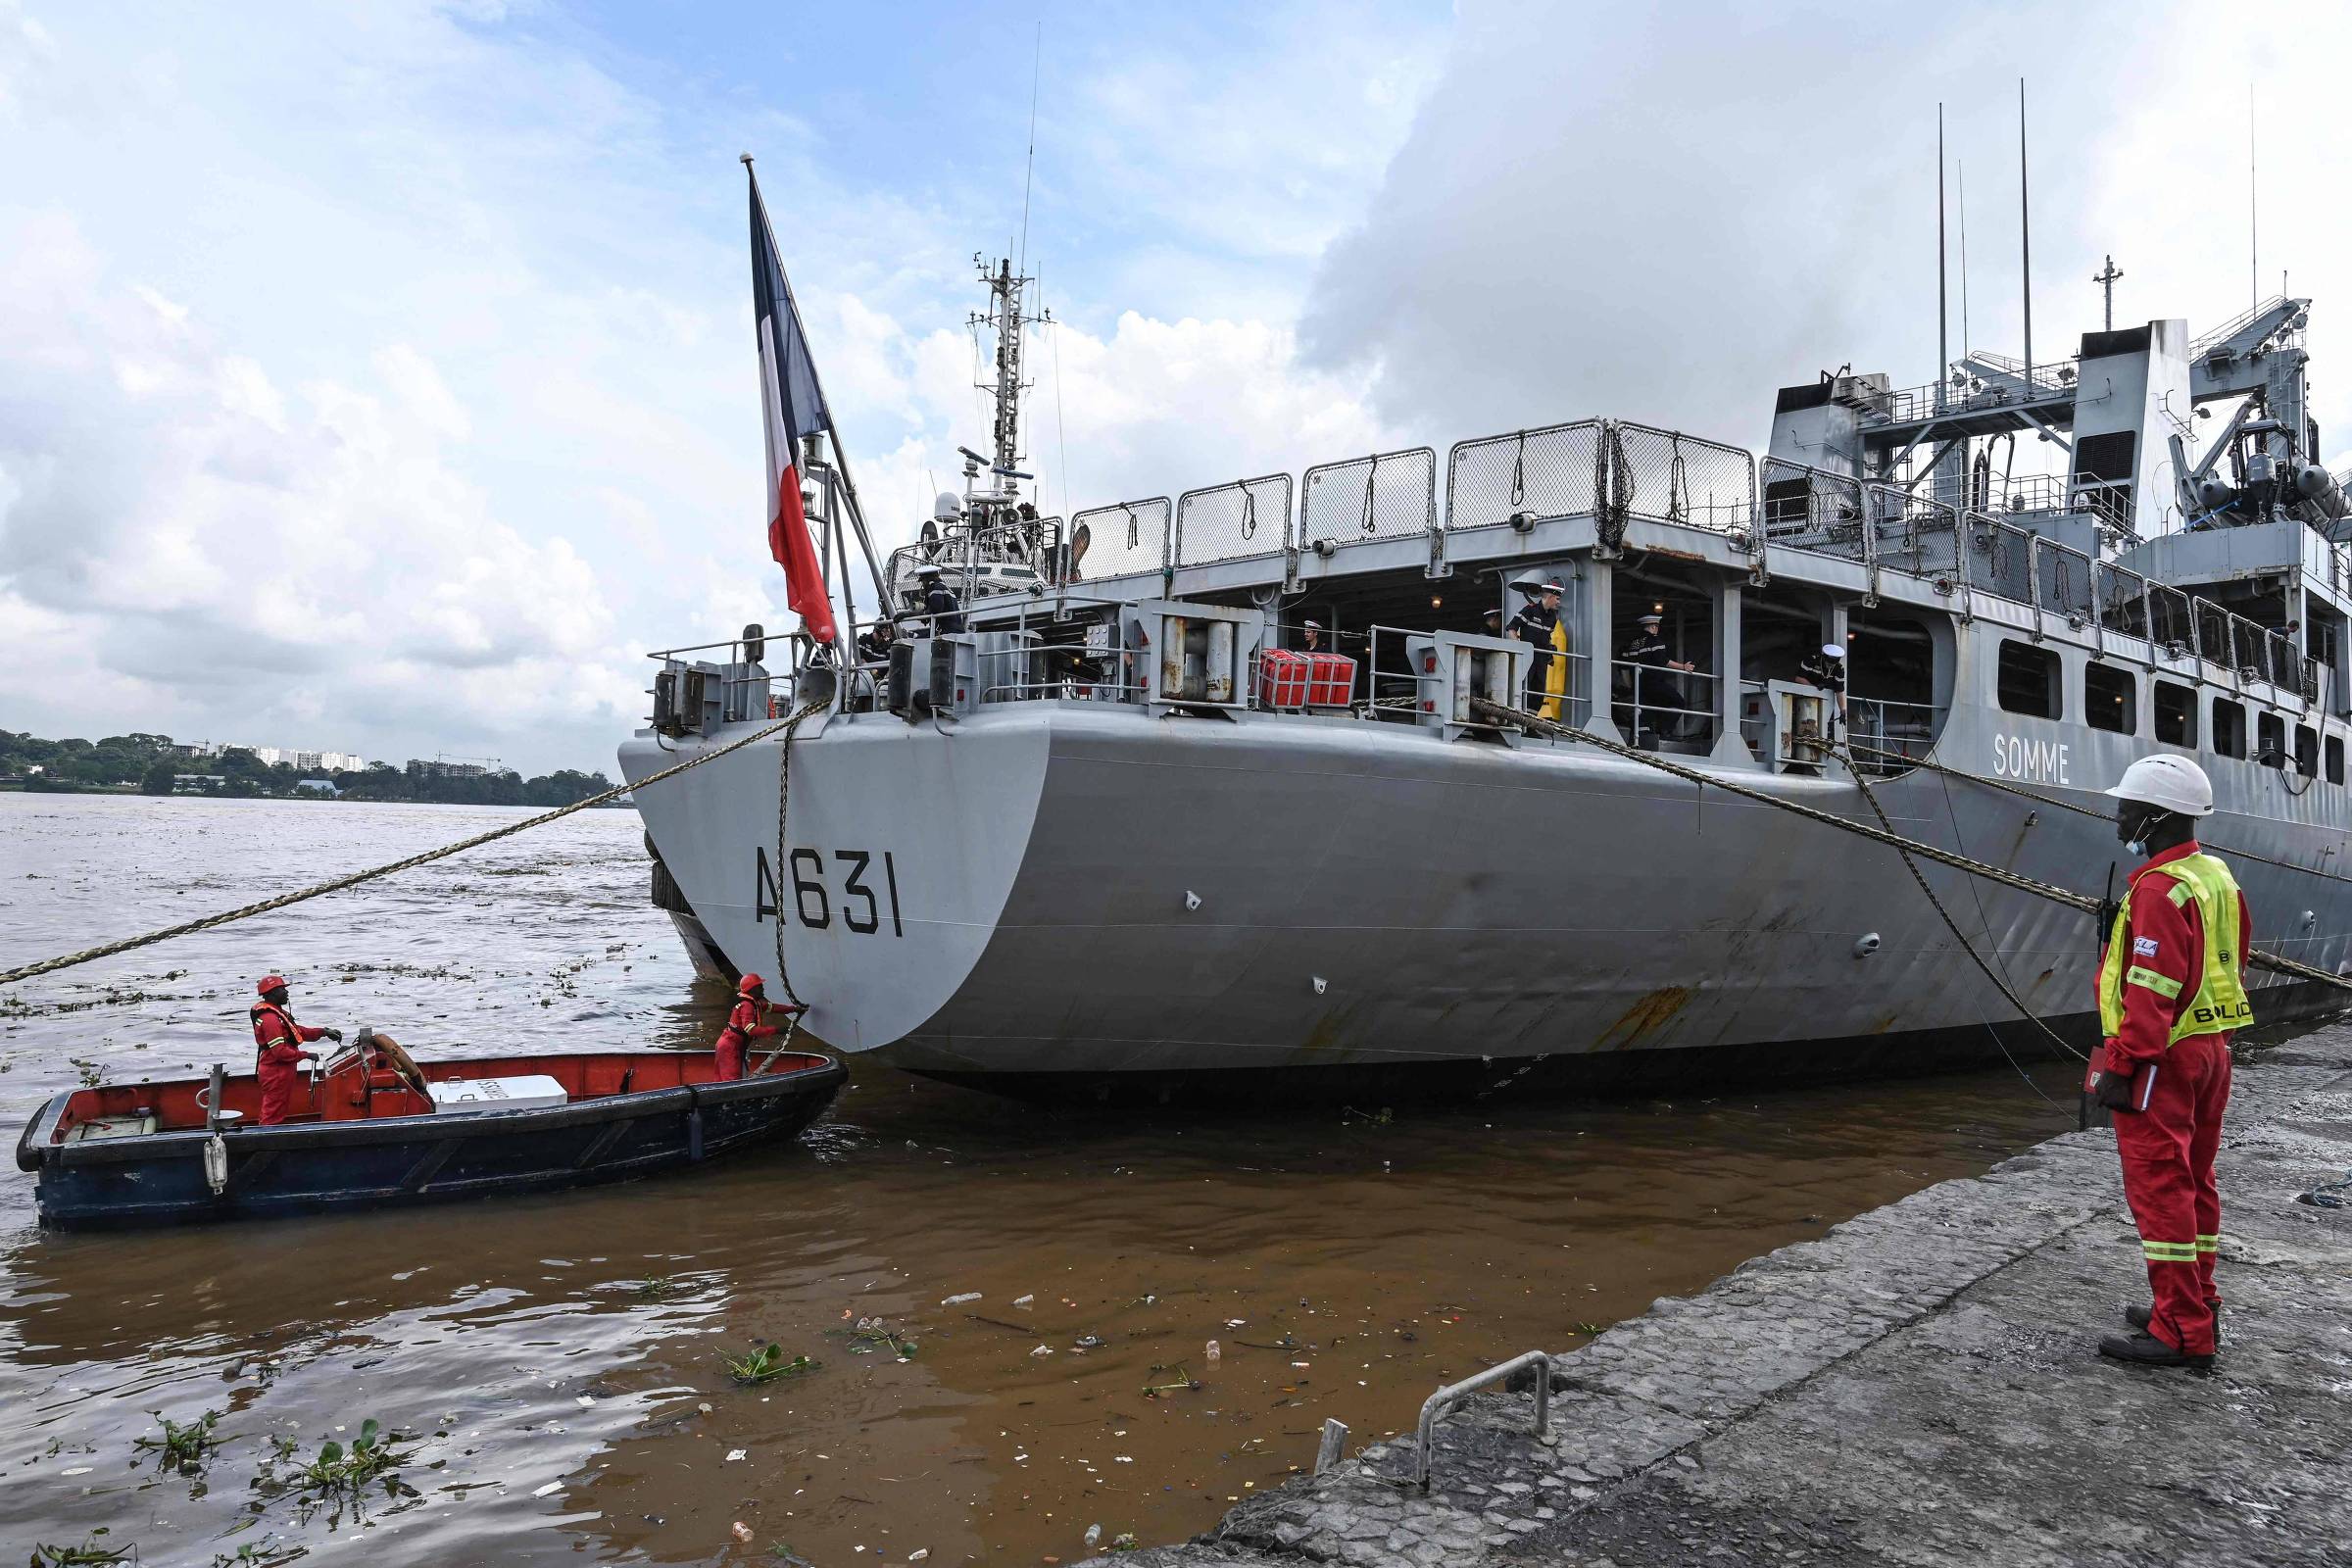 La France saisit 4 tonnes de cocaïne sur un navire en provenance du Brésil – 12/02/2022 – Monde